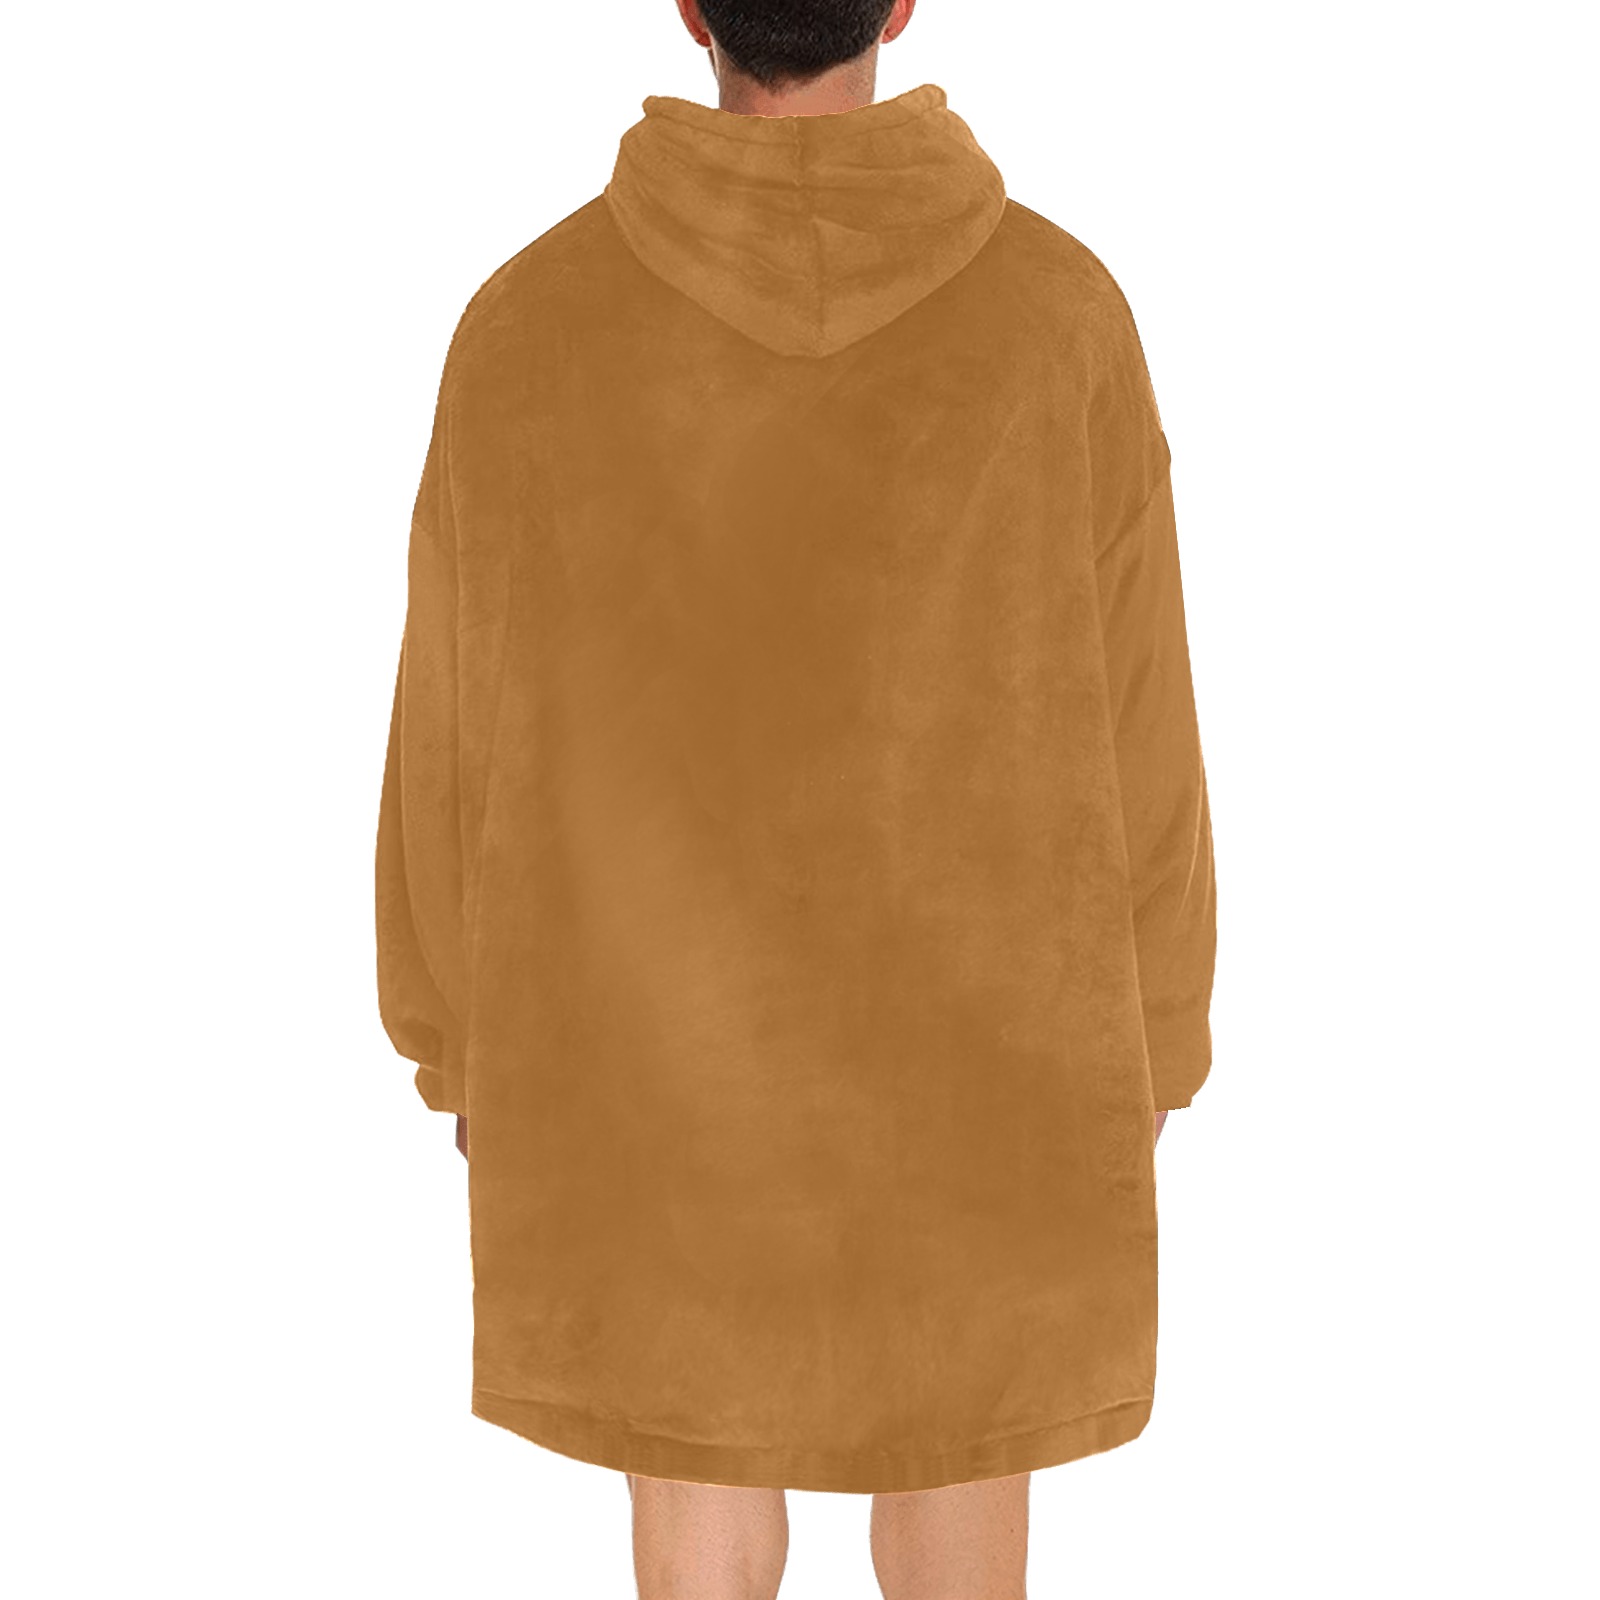 Sudan Brown Blanket Hoodie for Men